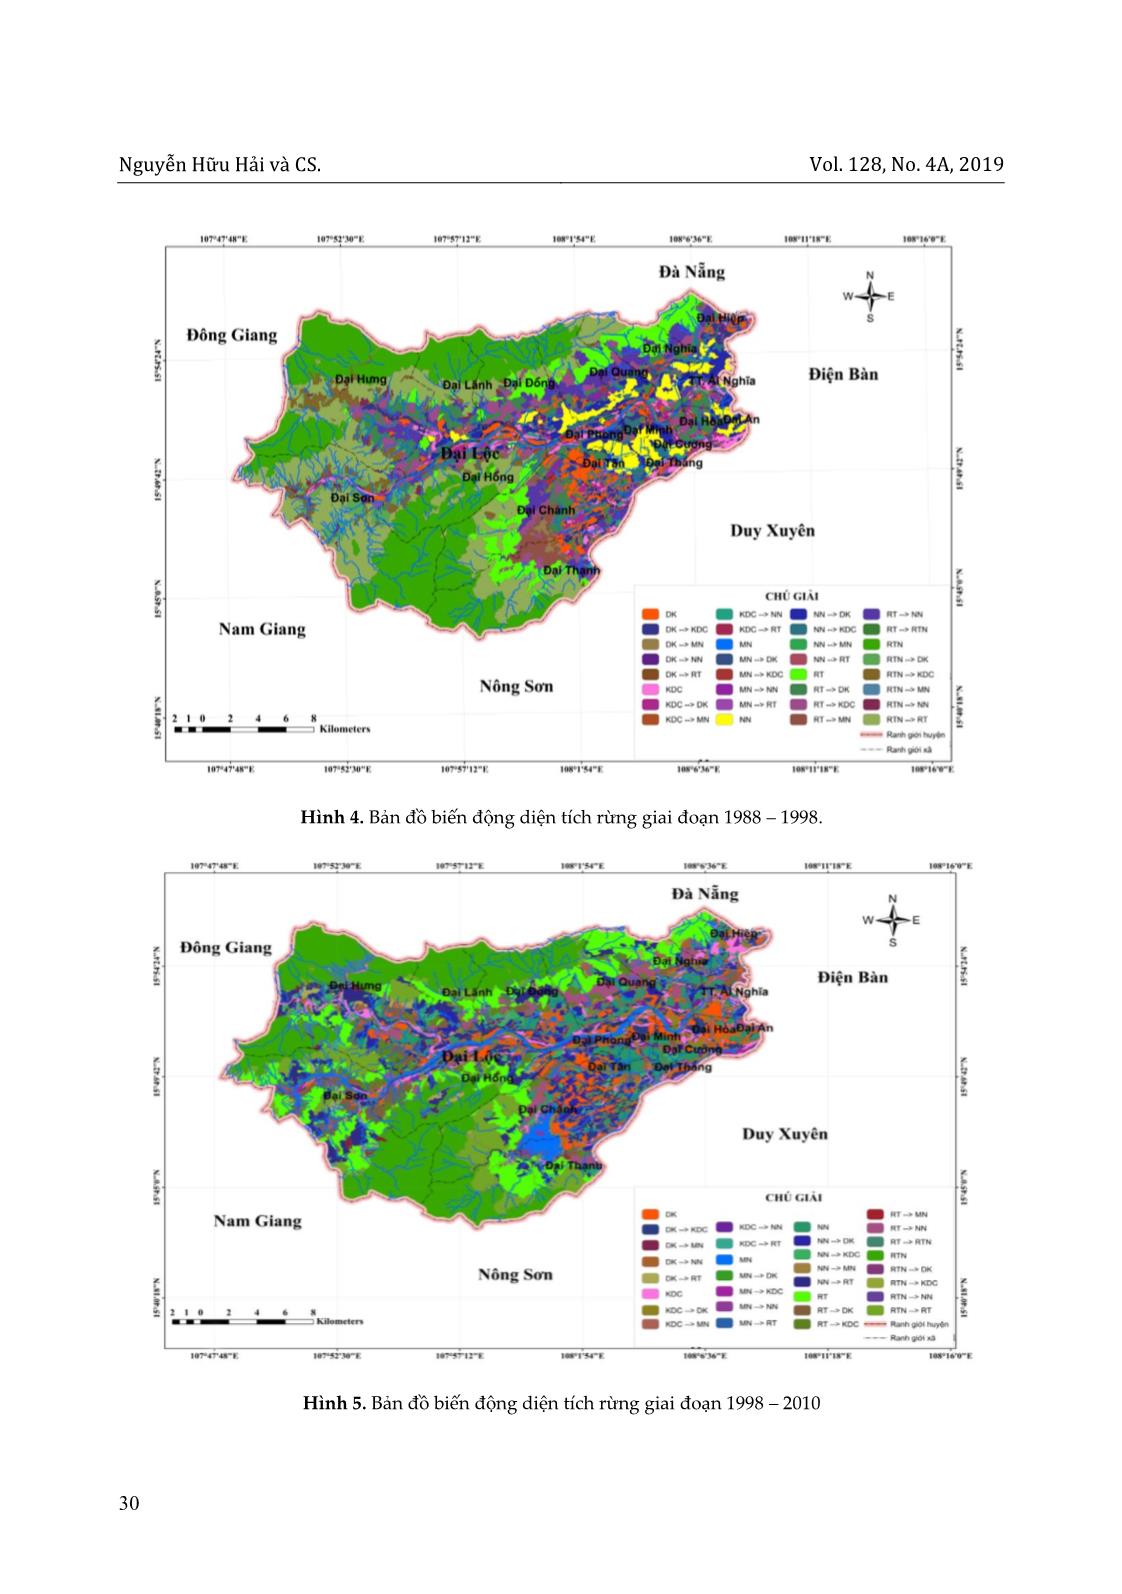 Ứng dụng viễn thám và GIS trong đánh giá biến động diện tích rừng huyện Đại Lộc, tỉnh Quảng Nam giai đoạn 1988-2017 trang 10